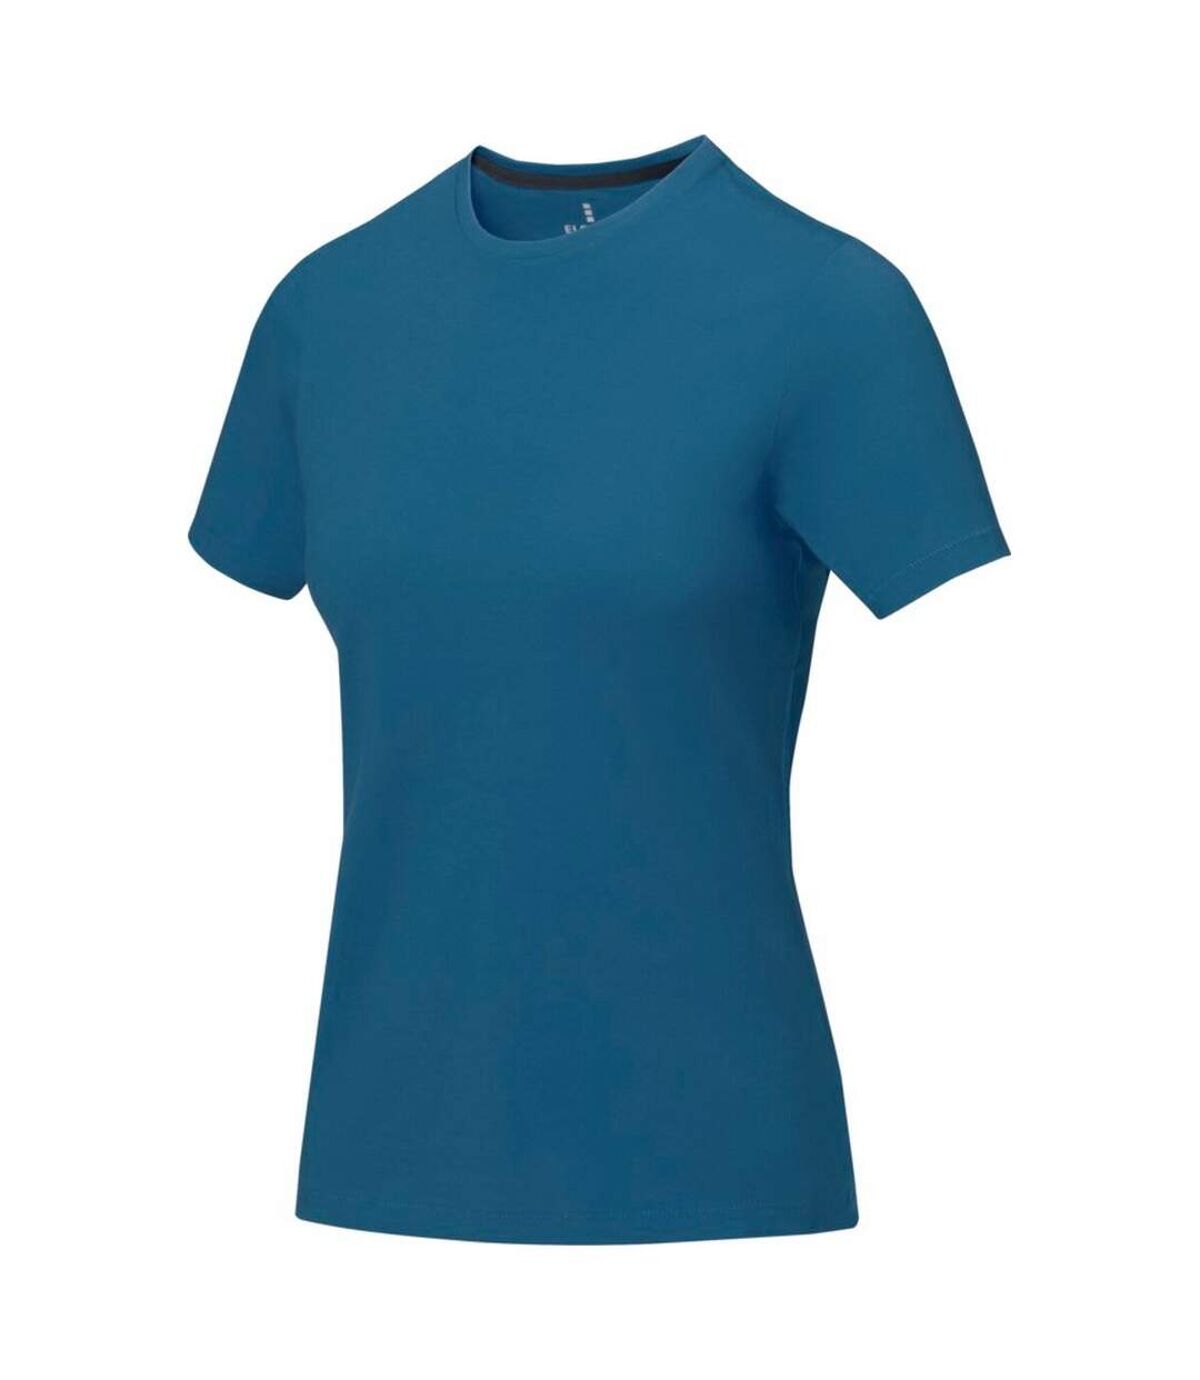 Elevate - T-shirt manches courtes Nanaimo - Femme (Bleu) - UTPF1808